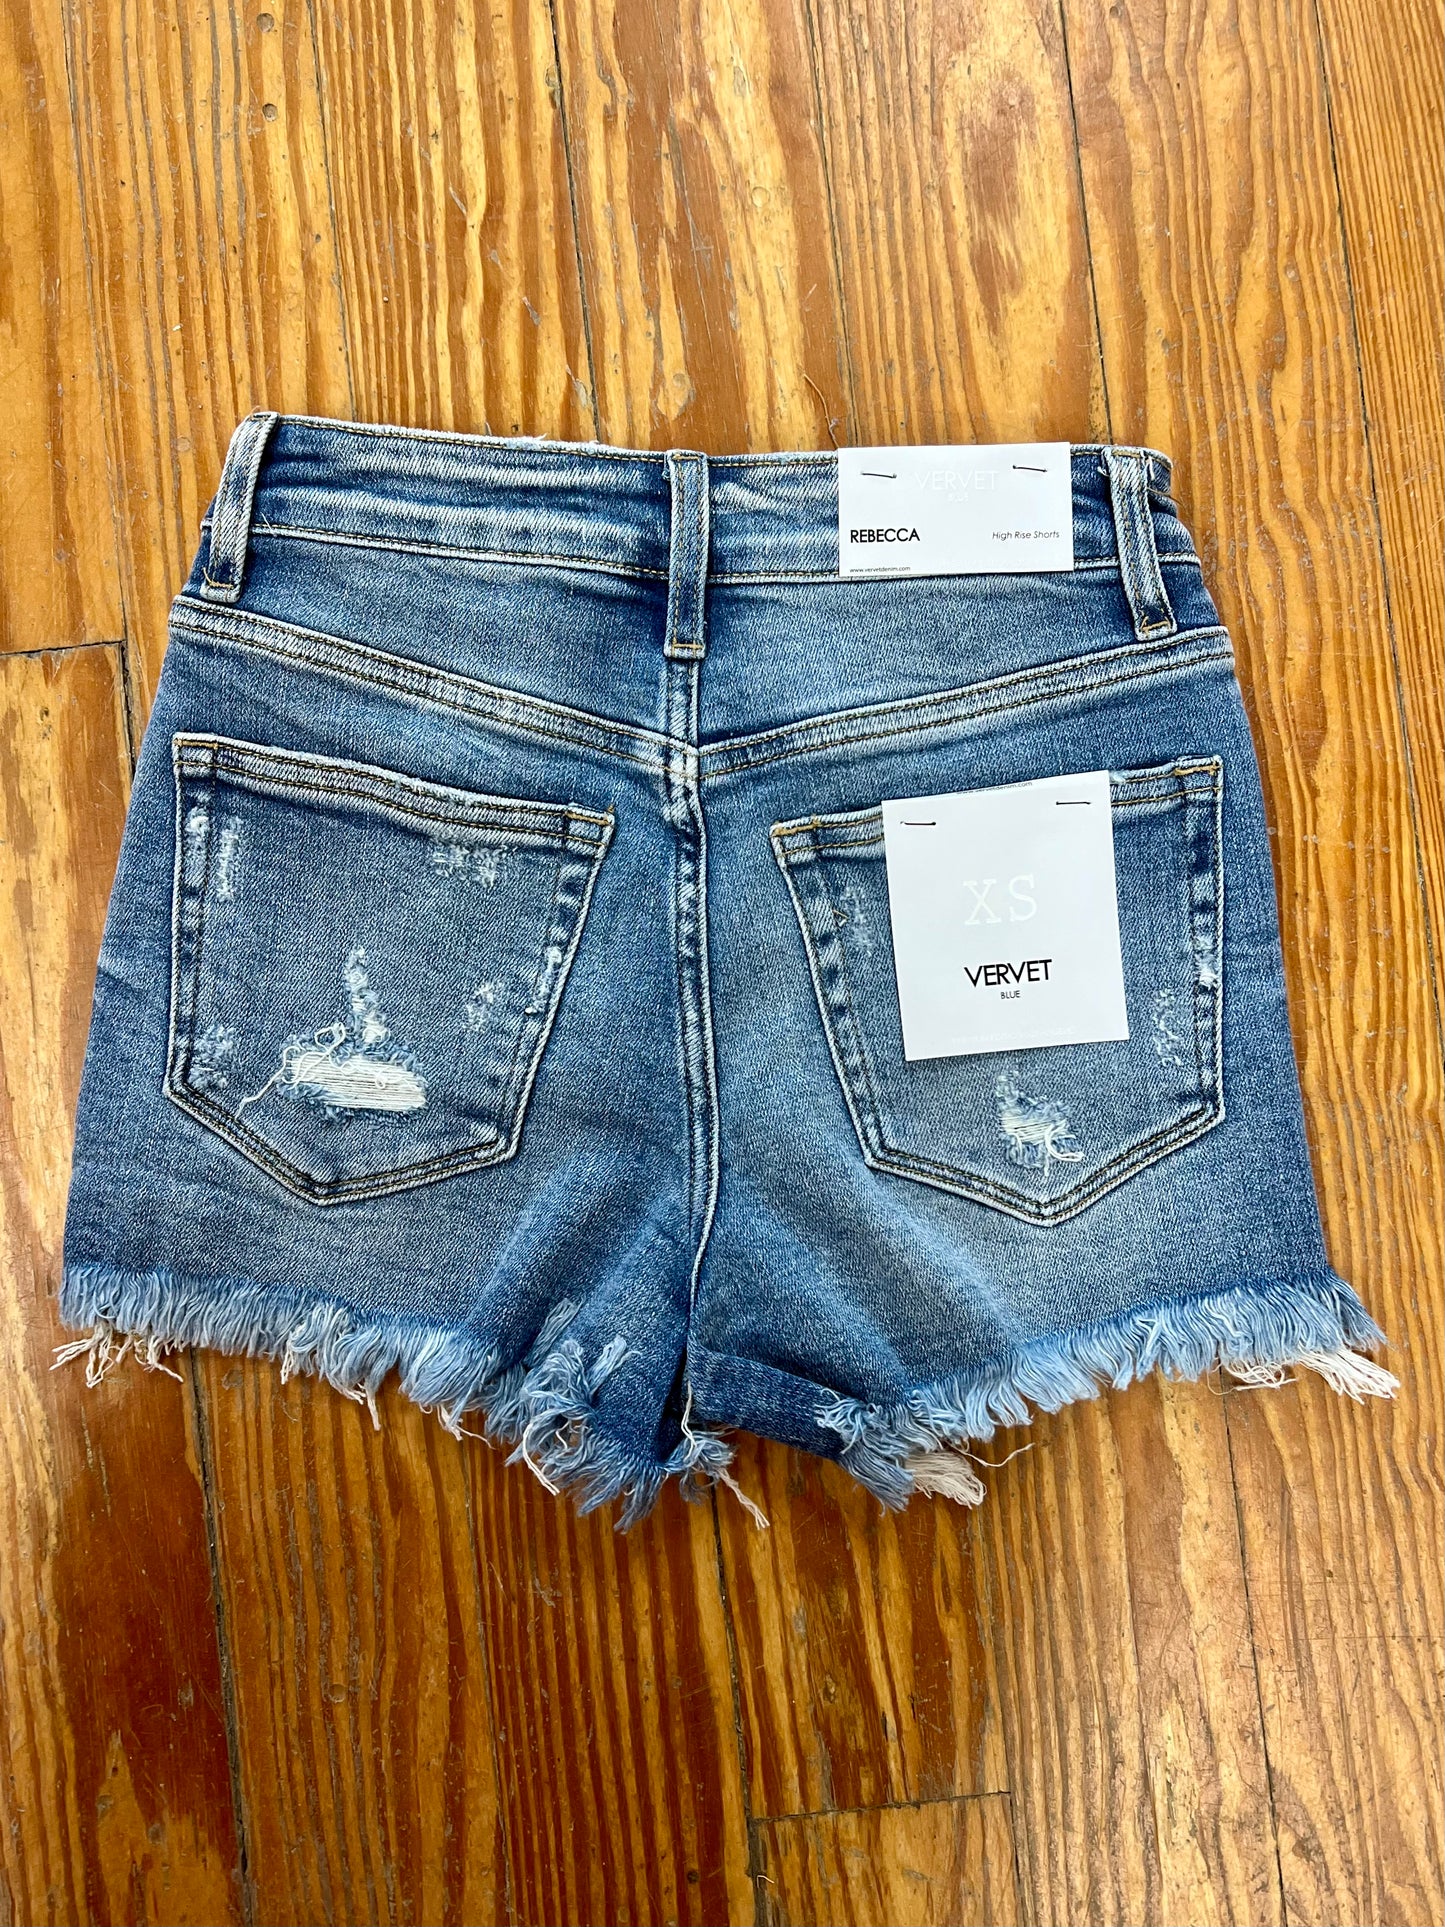 Rebecca Crossover Shorts